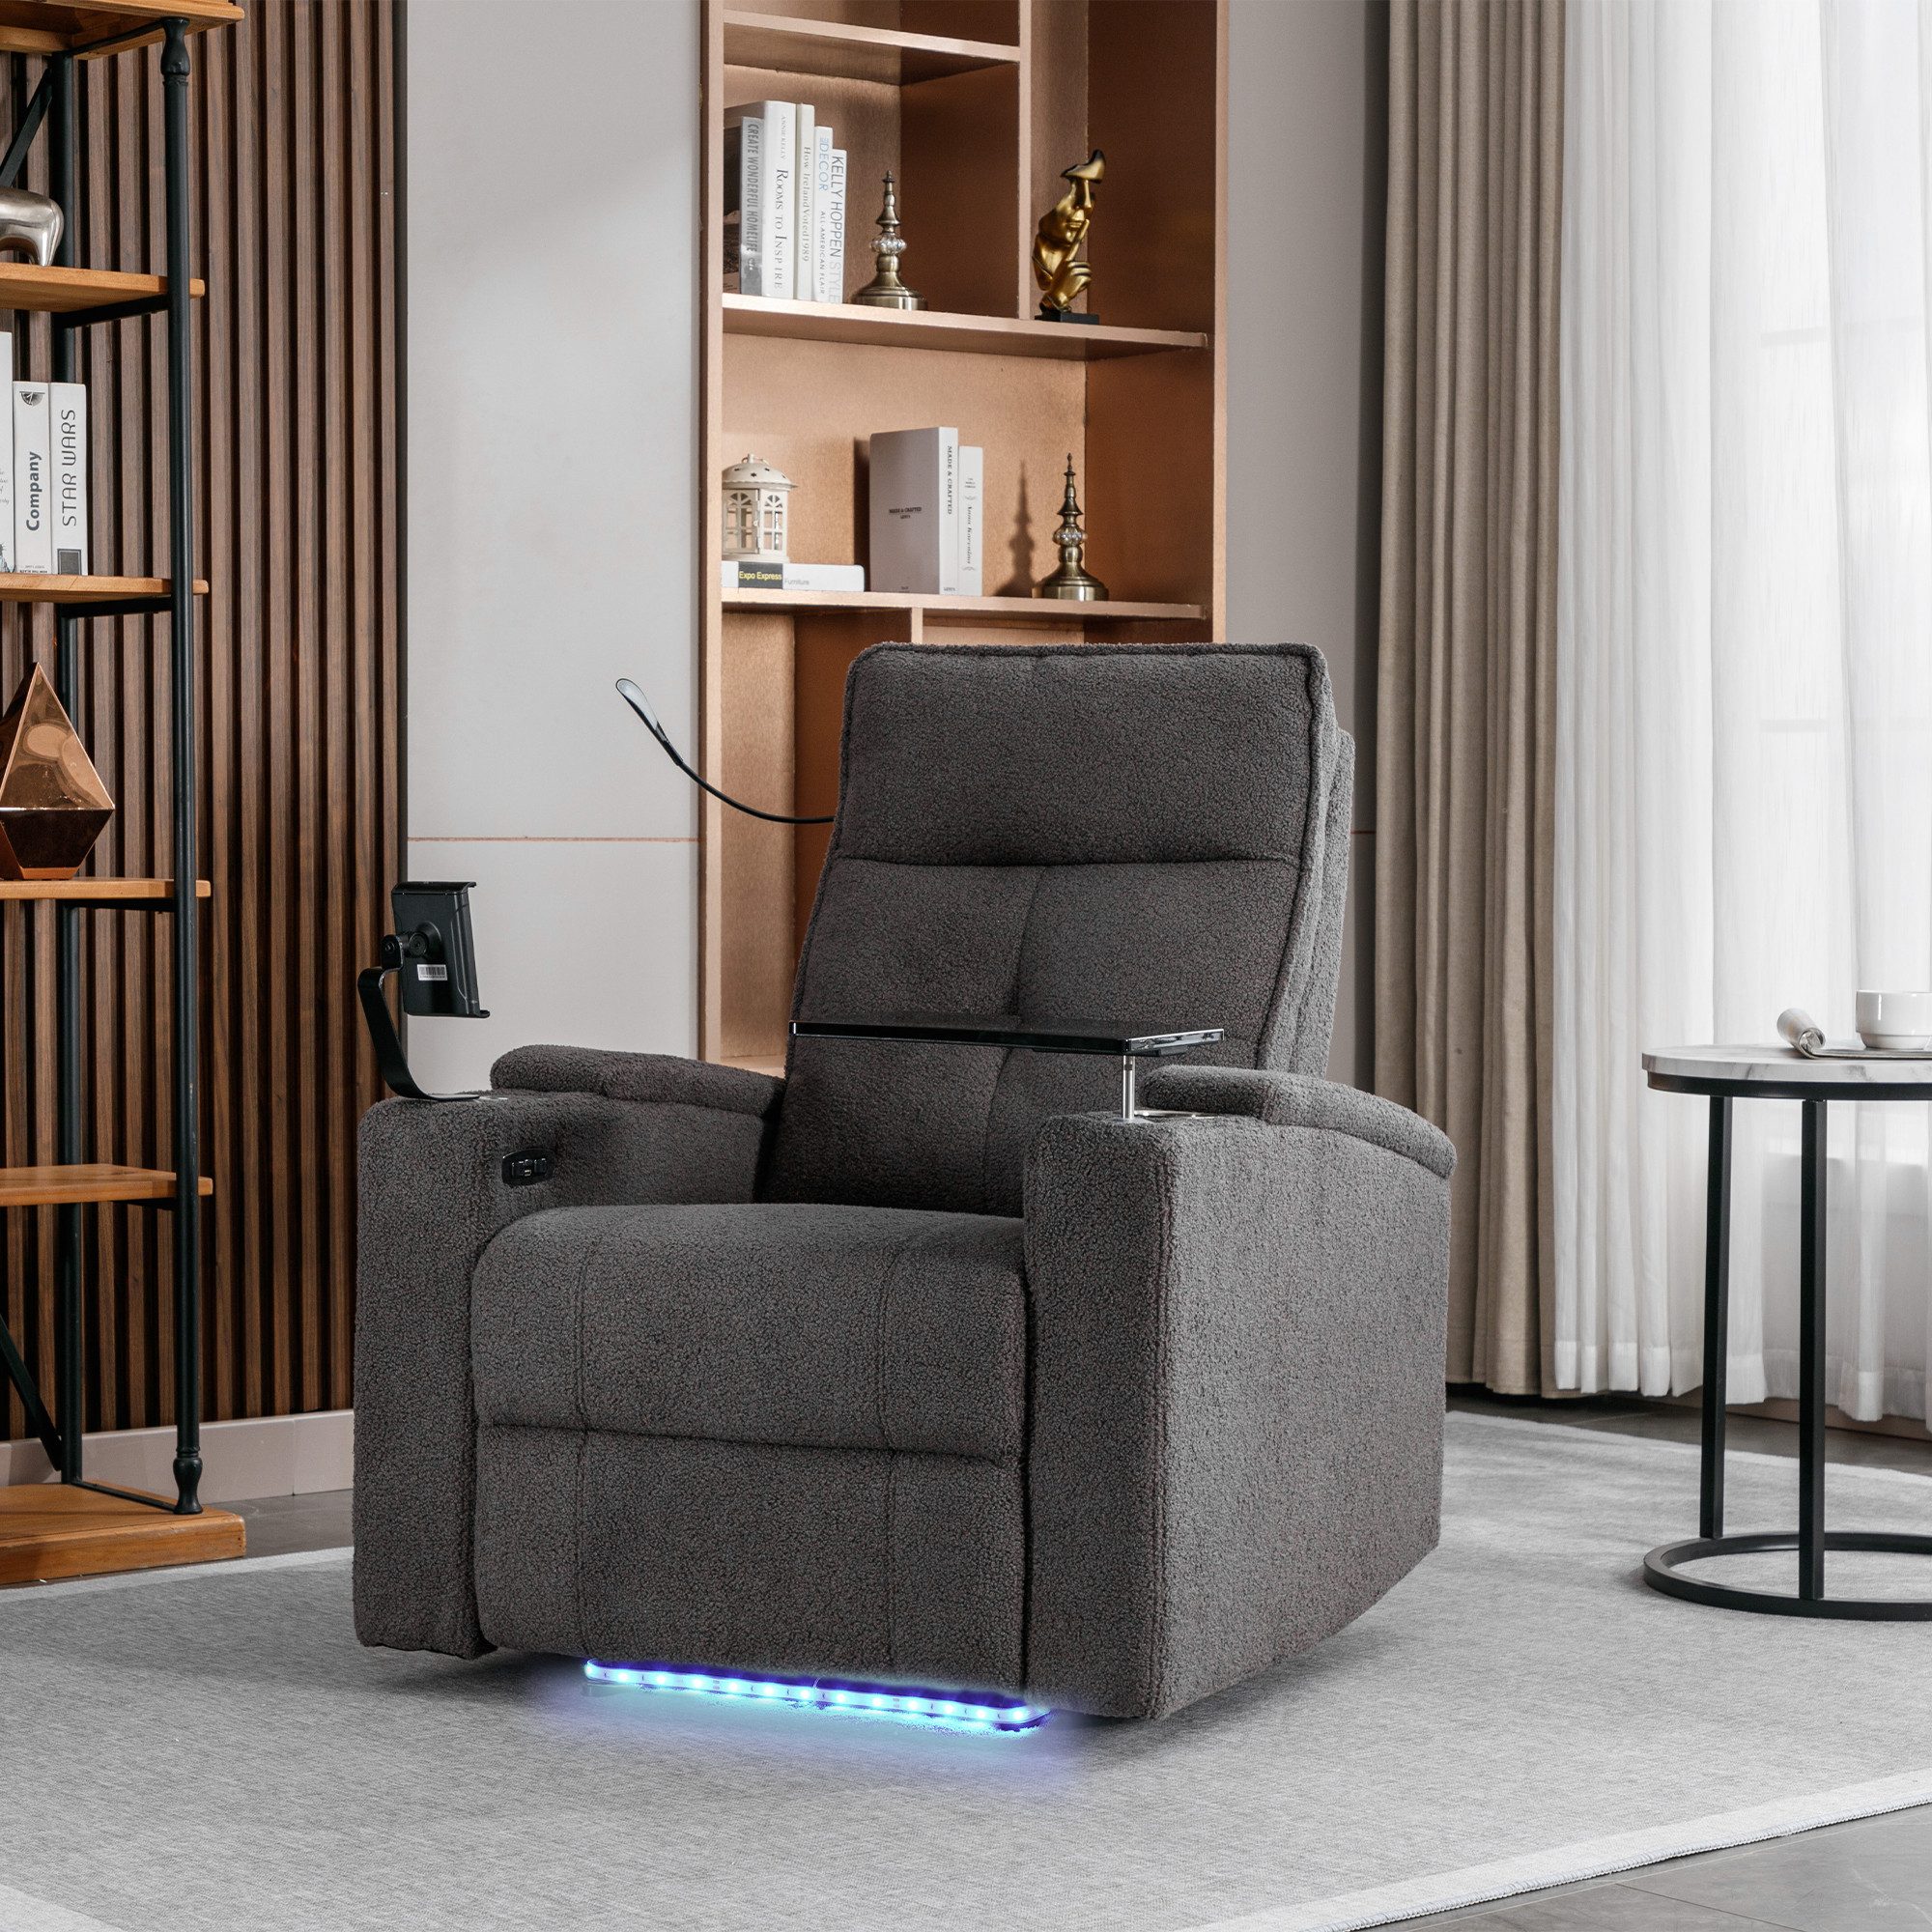 Ulife Relaxsessel LED elektrischer Liegestuhl mit Tabletttisch und Handyhalter, Fernsehsessel, Gaming-Liegestuhl Heimkino-Bestuhlung